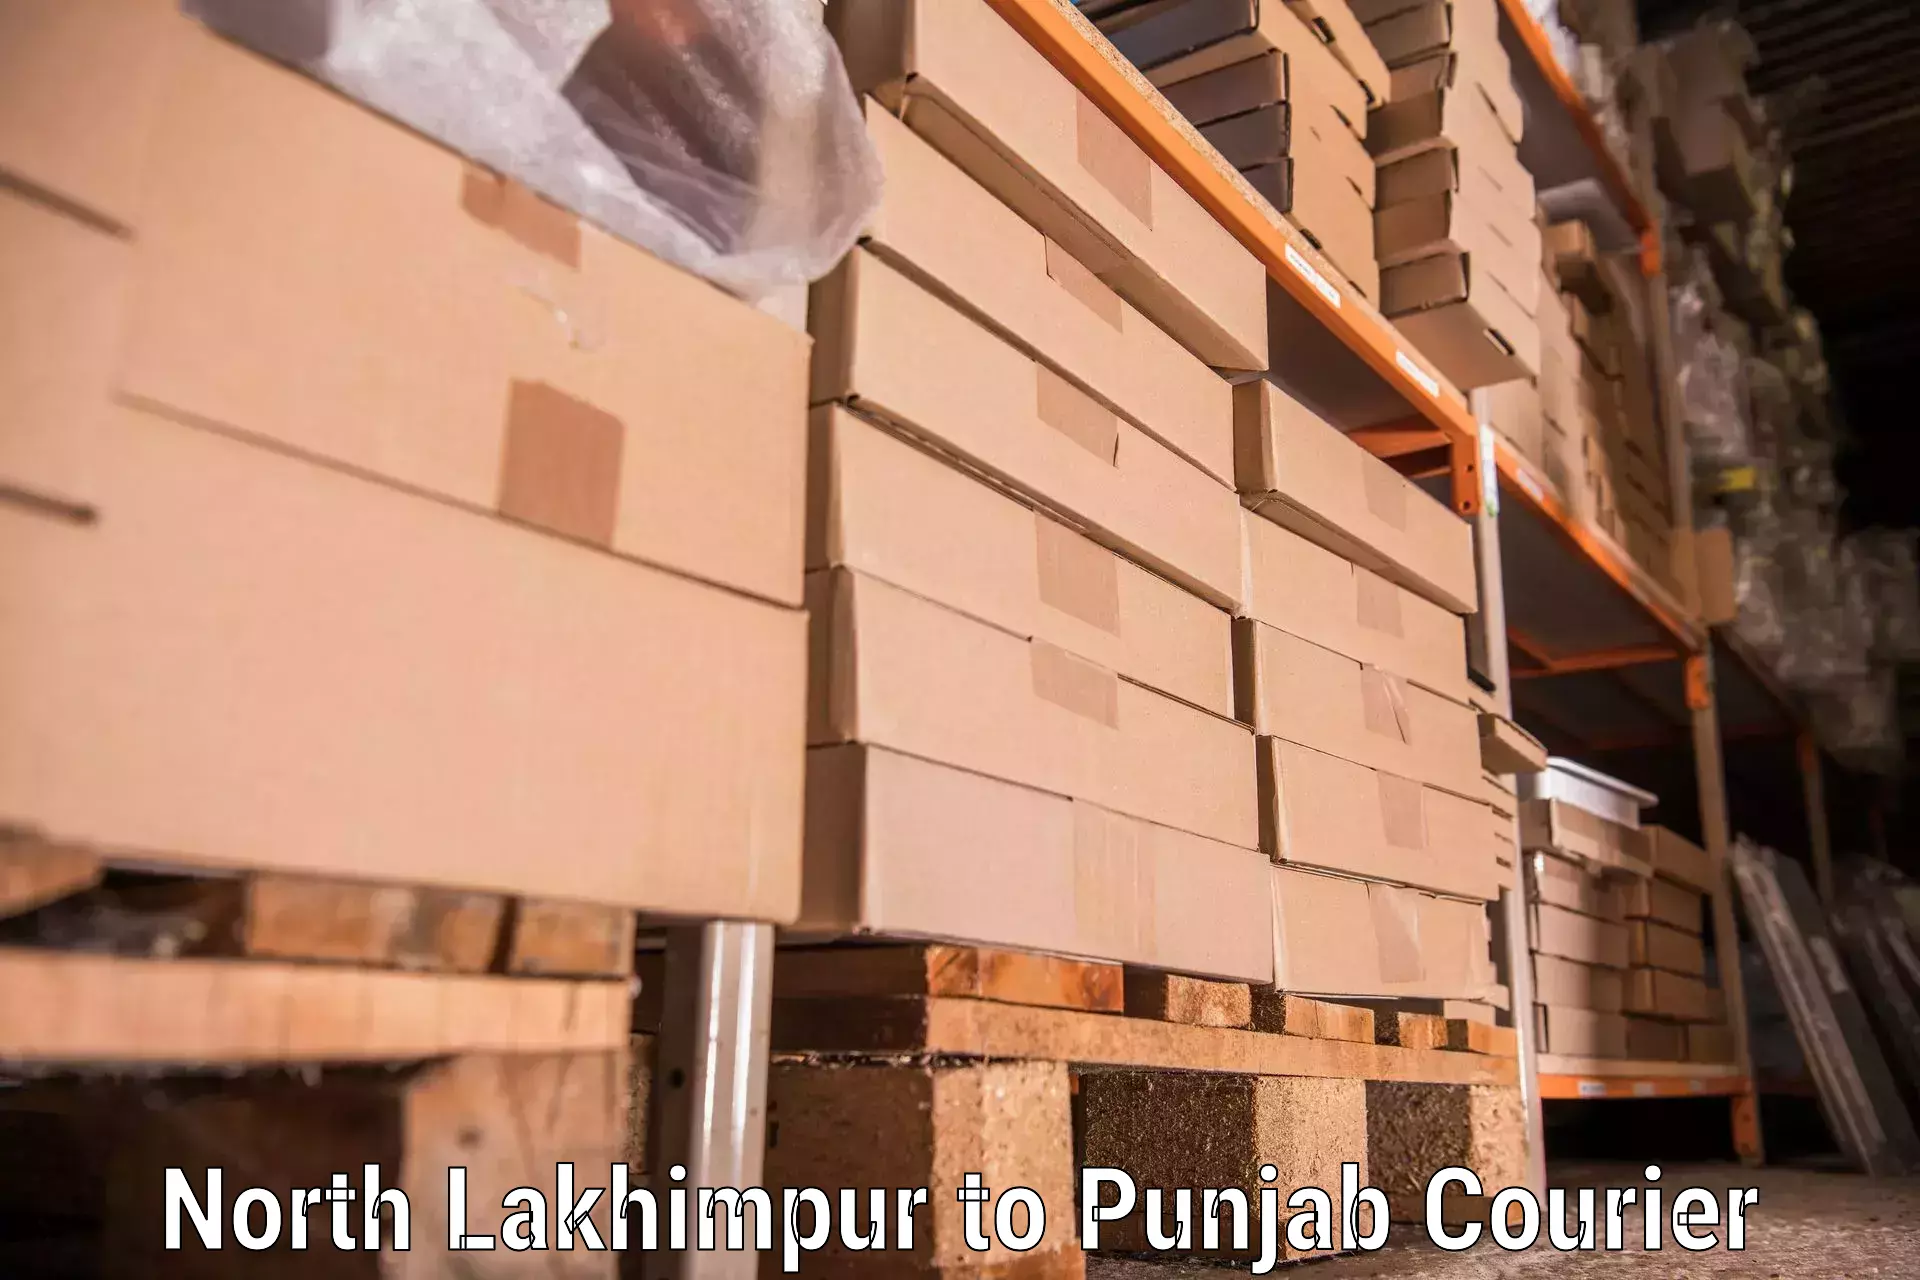 Furniture moving experts North Lakhimpur to Giddarbaha